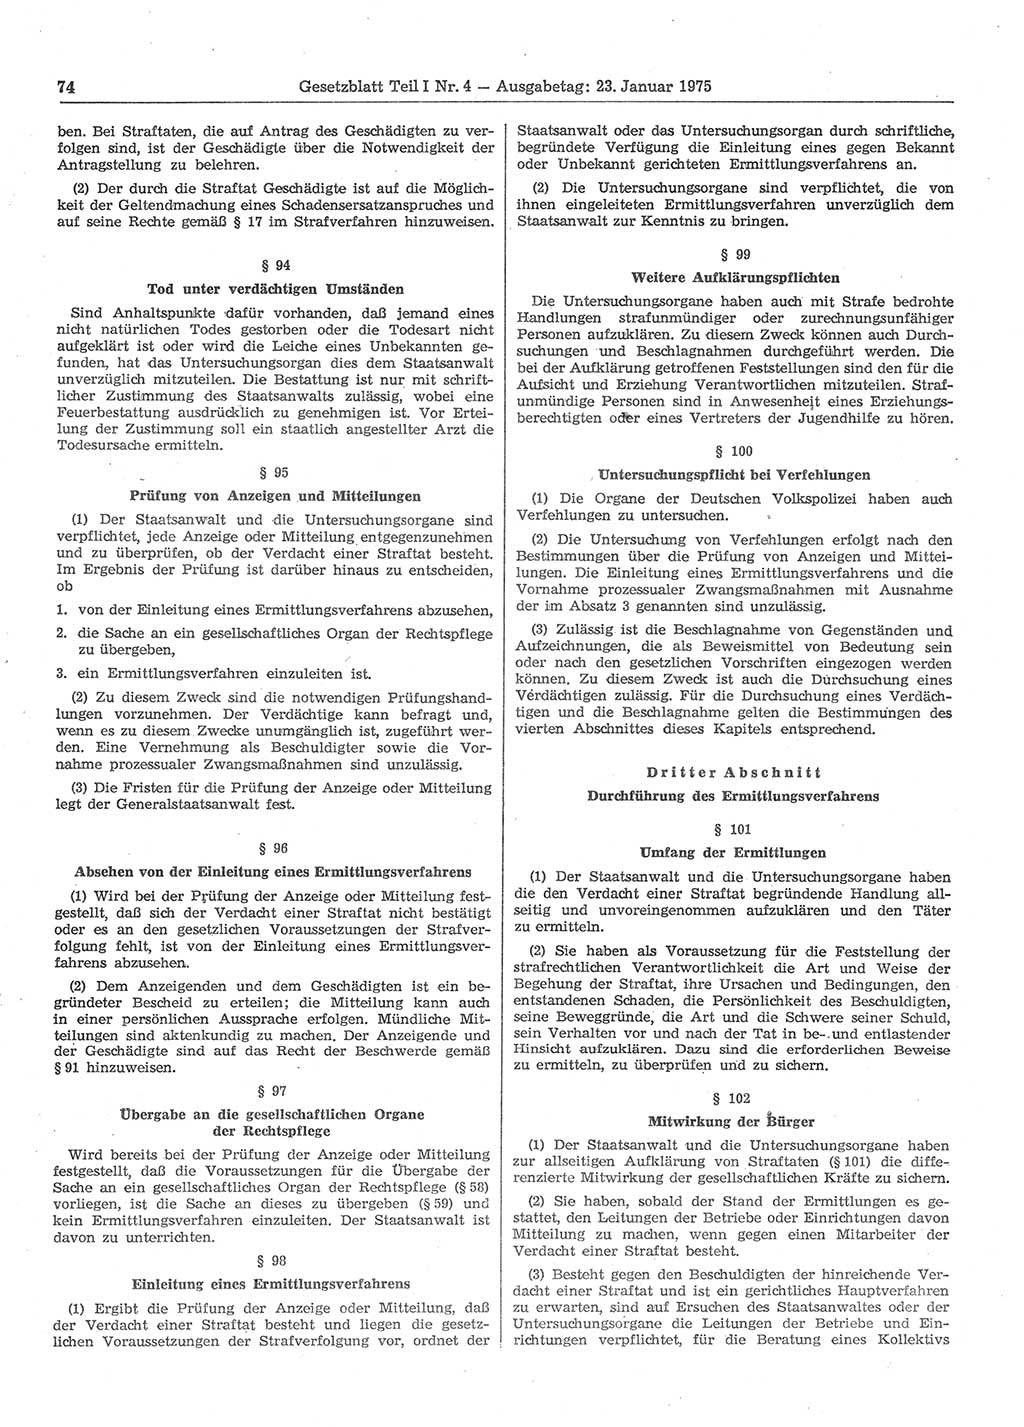 Gesetzblatt (GBl.) der Deutschen Demokratischen Republik (DDR) Teil Ⅰ 1975, Seite 74 (GBl. DDR Ⅰ 1975, S. 74)